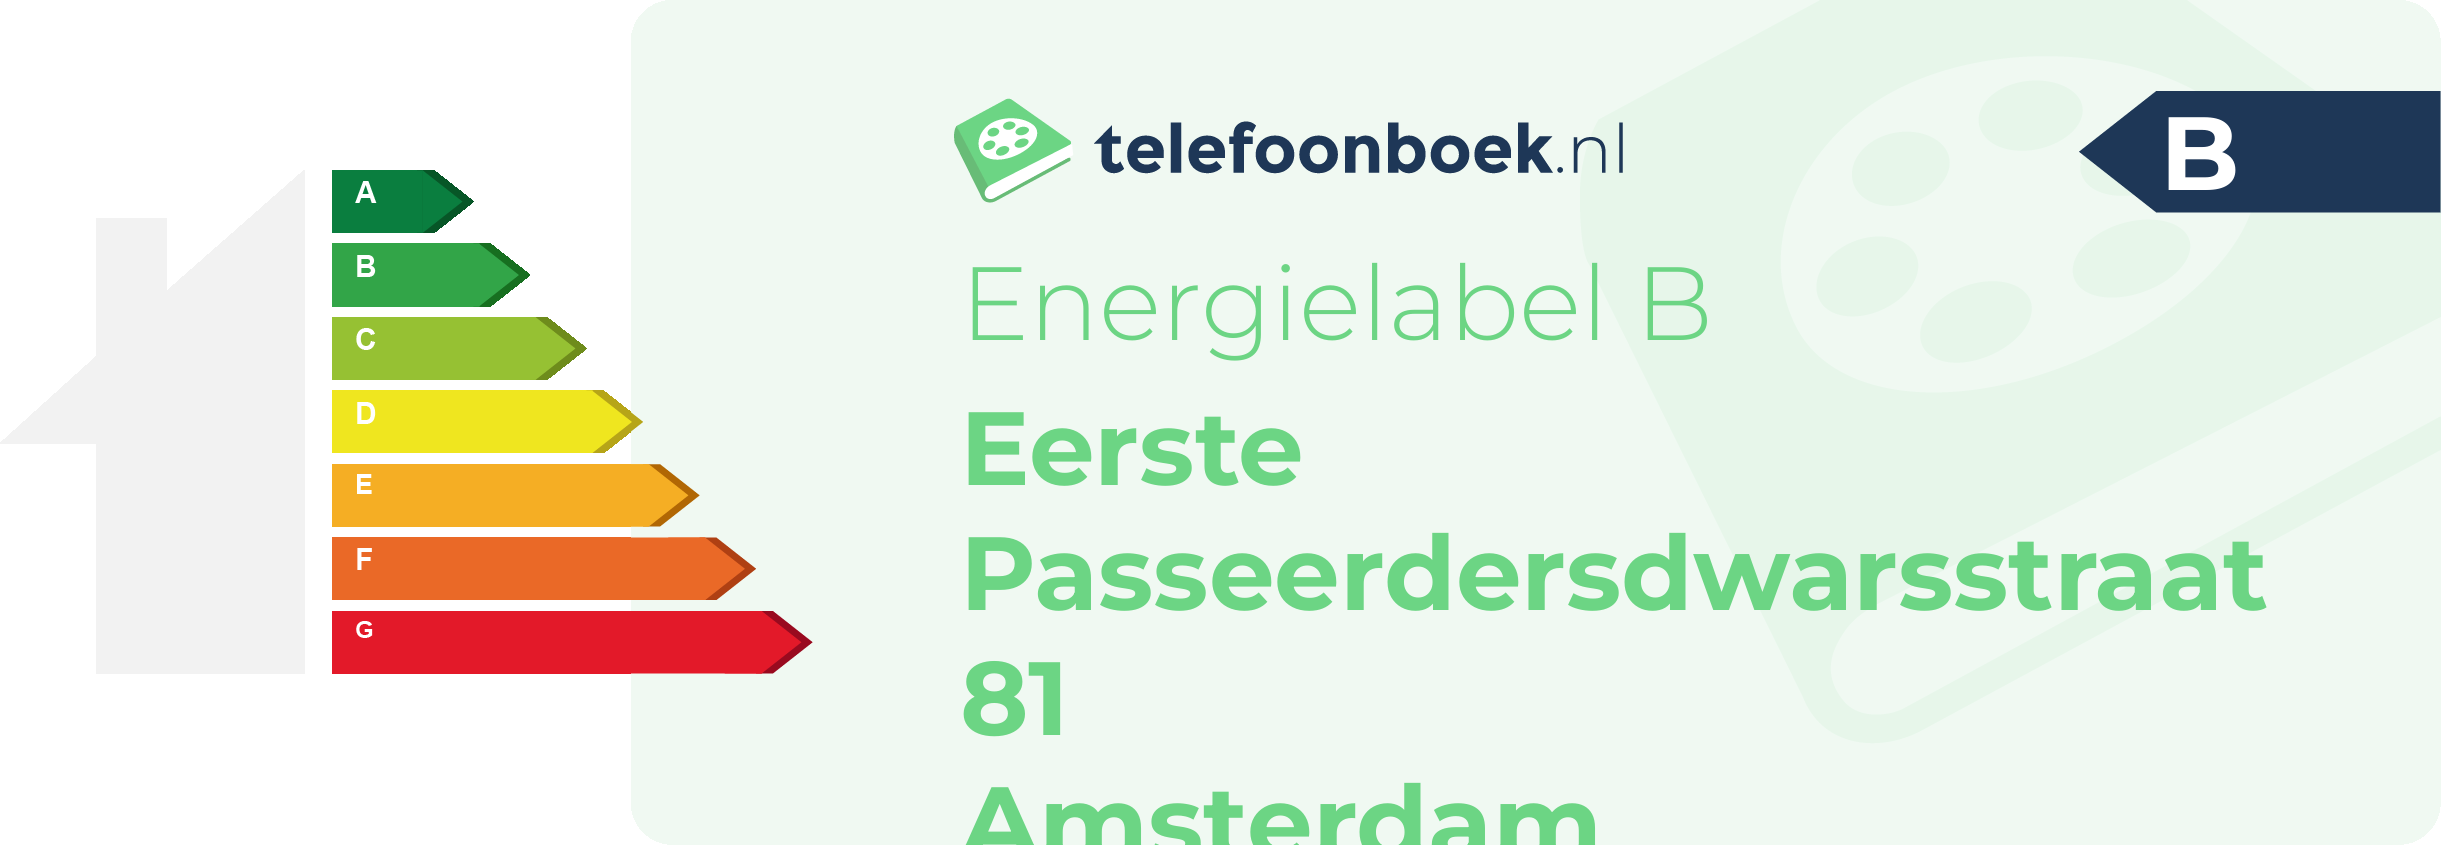 Energielabel Eerste Passeerdersdwarsstraat 81 Amsterdam